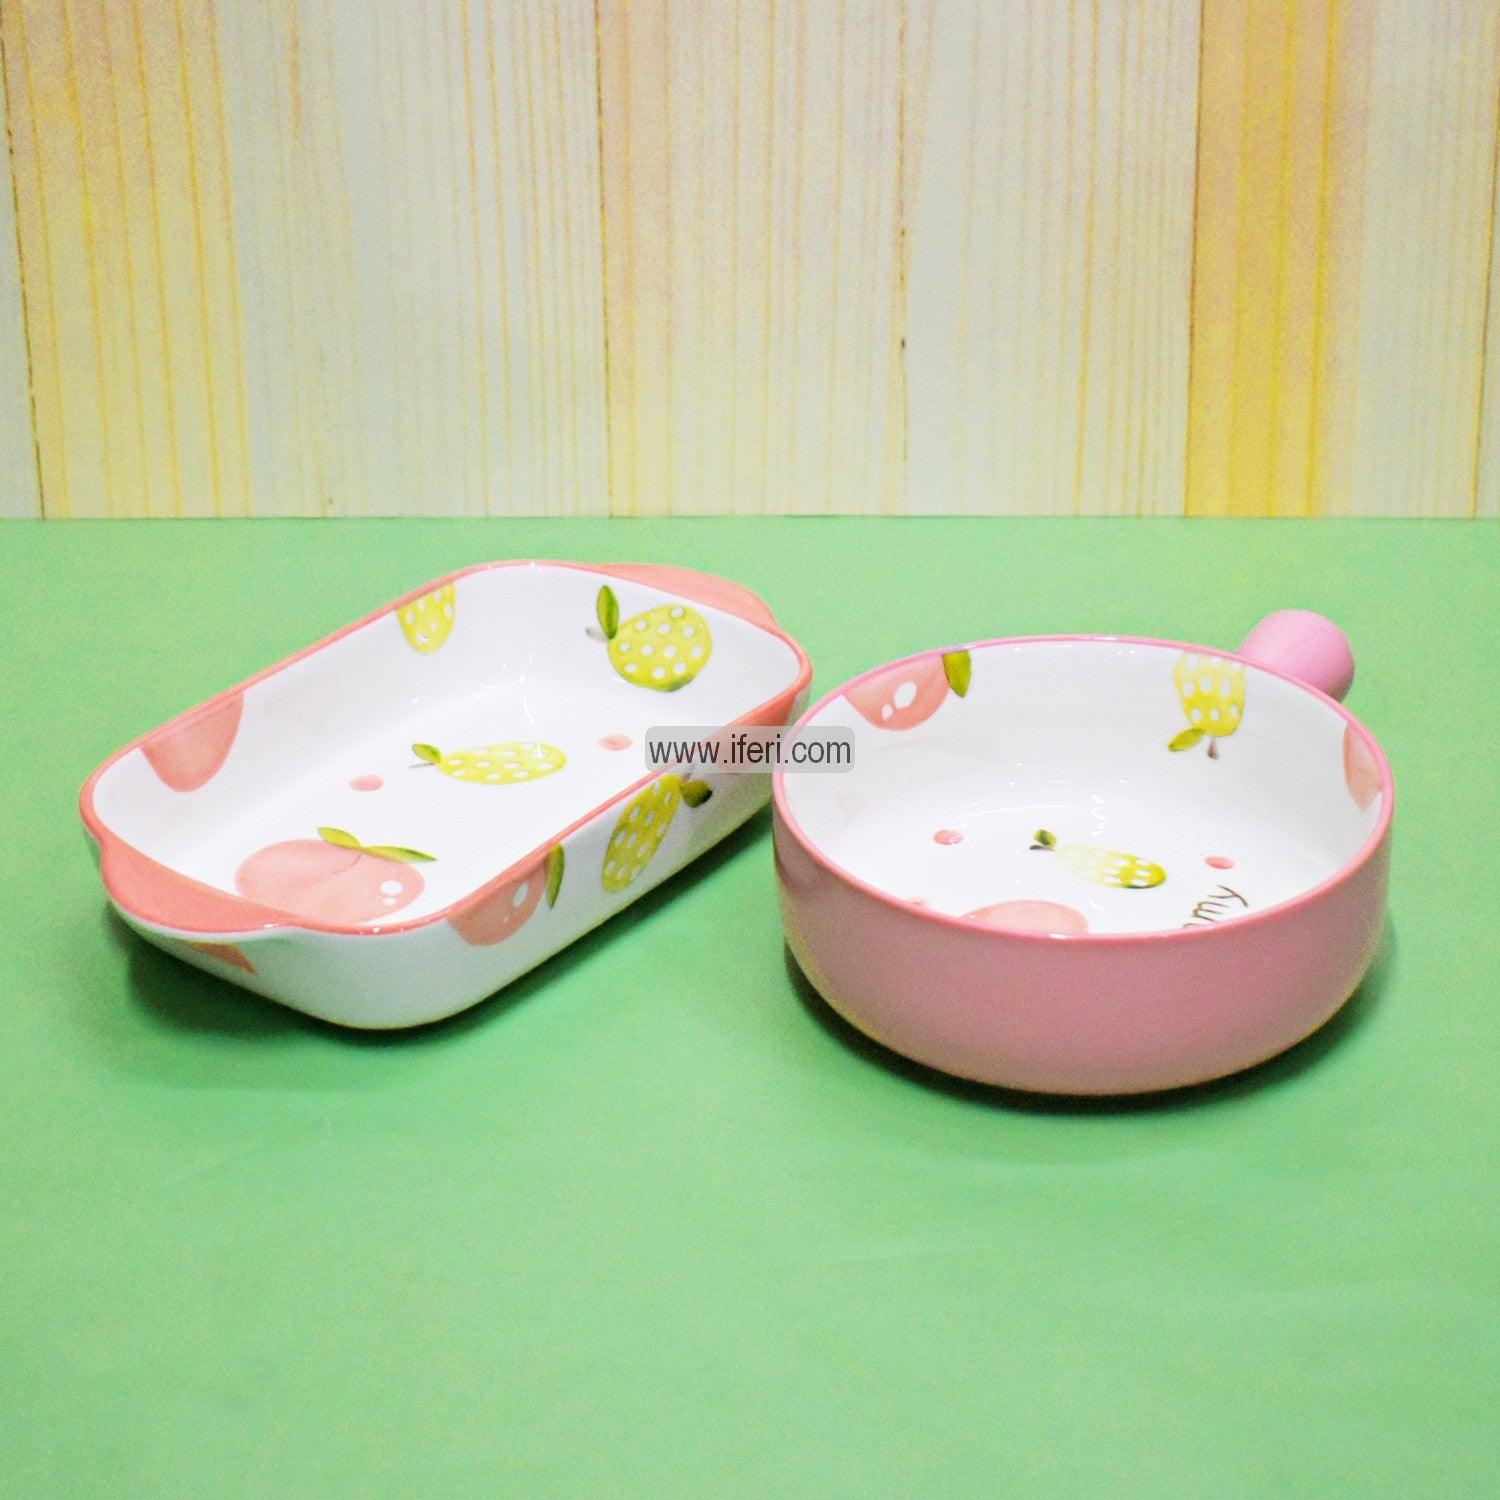 2 Pcs Ceramic Serving Dish SY0047 Price in Bangladesh - iferi.com